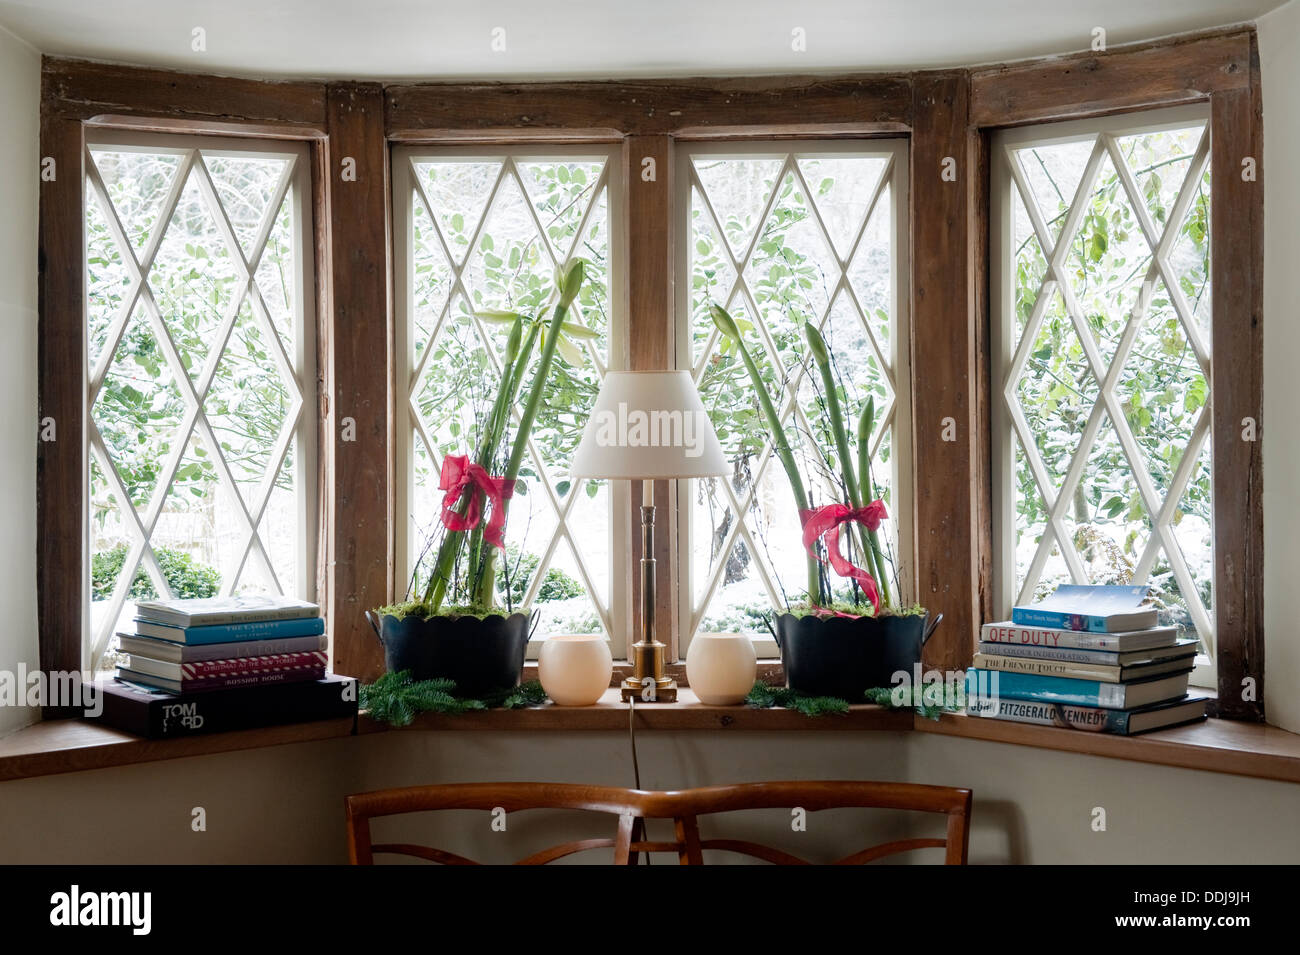 Des livres et des plantes en pot sur le rebord d'une fenêtre vitrage diamant Banque D'Images